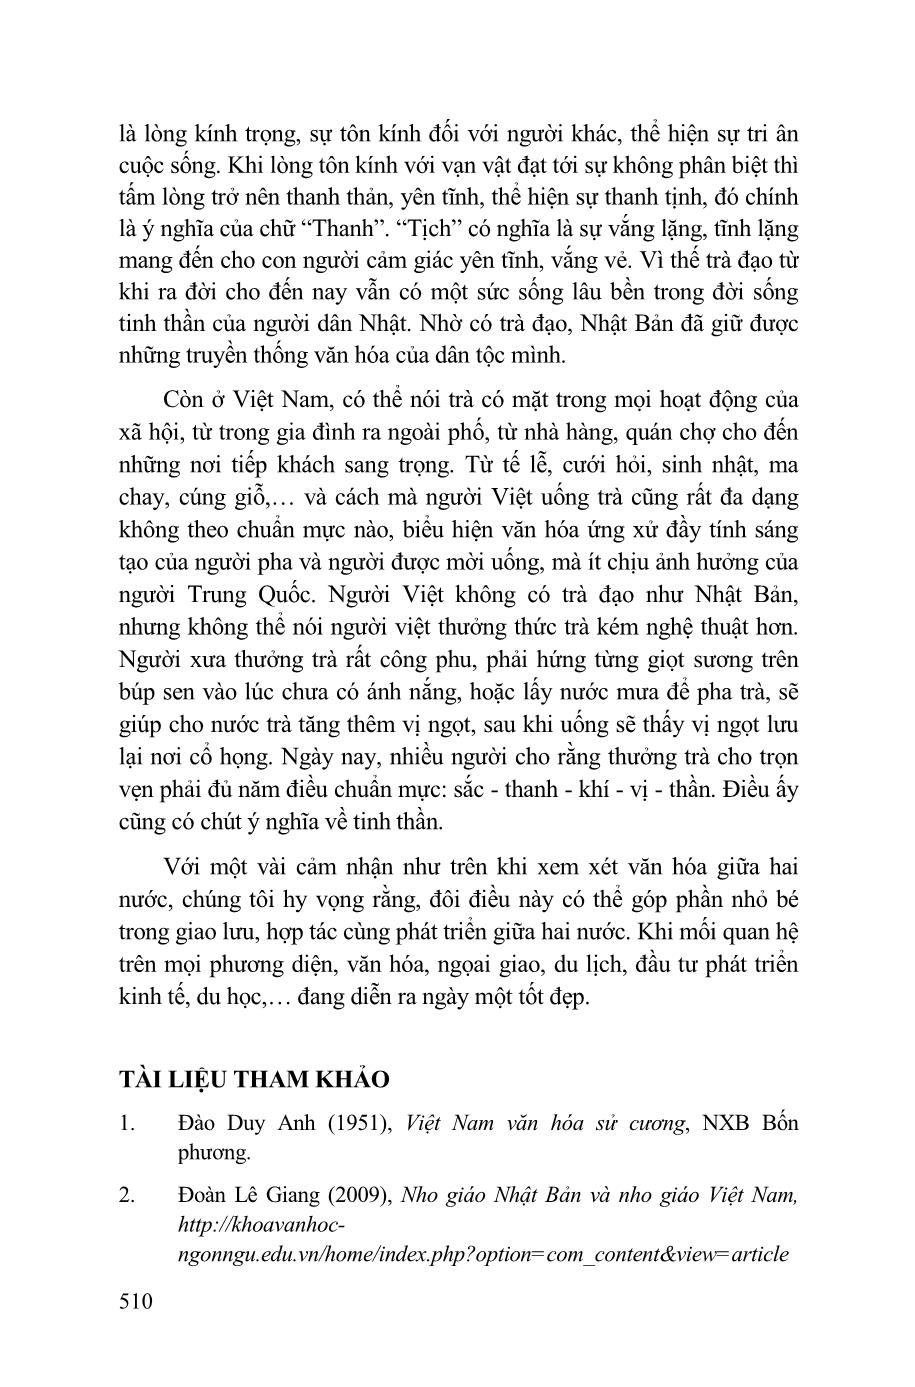 Đôi điều cảm nhận về những nét tương đồng và dị biệt trong văn hóa Việt Nam và Nhật Bản trang 10